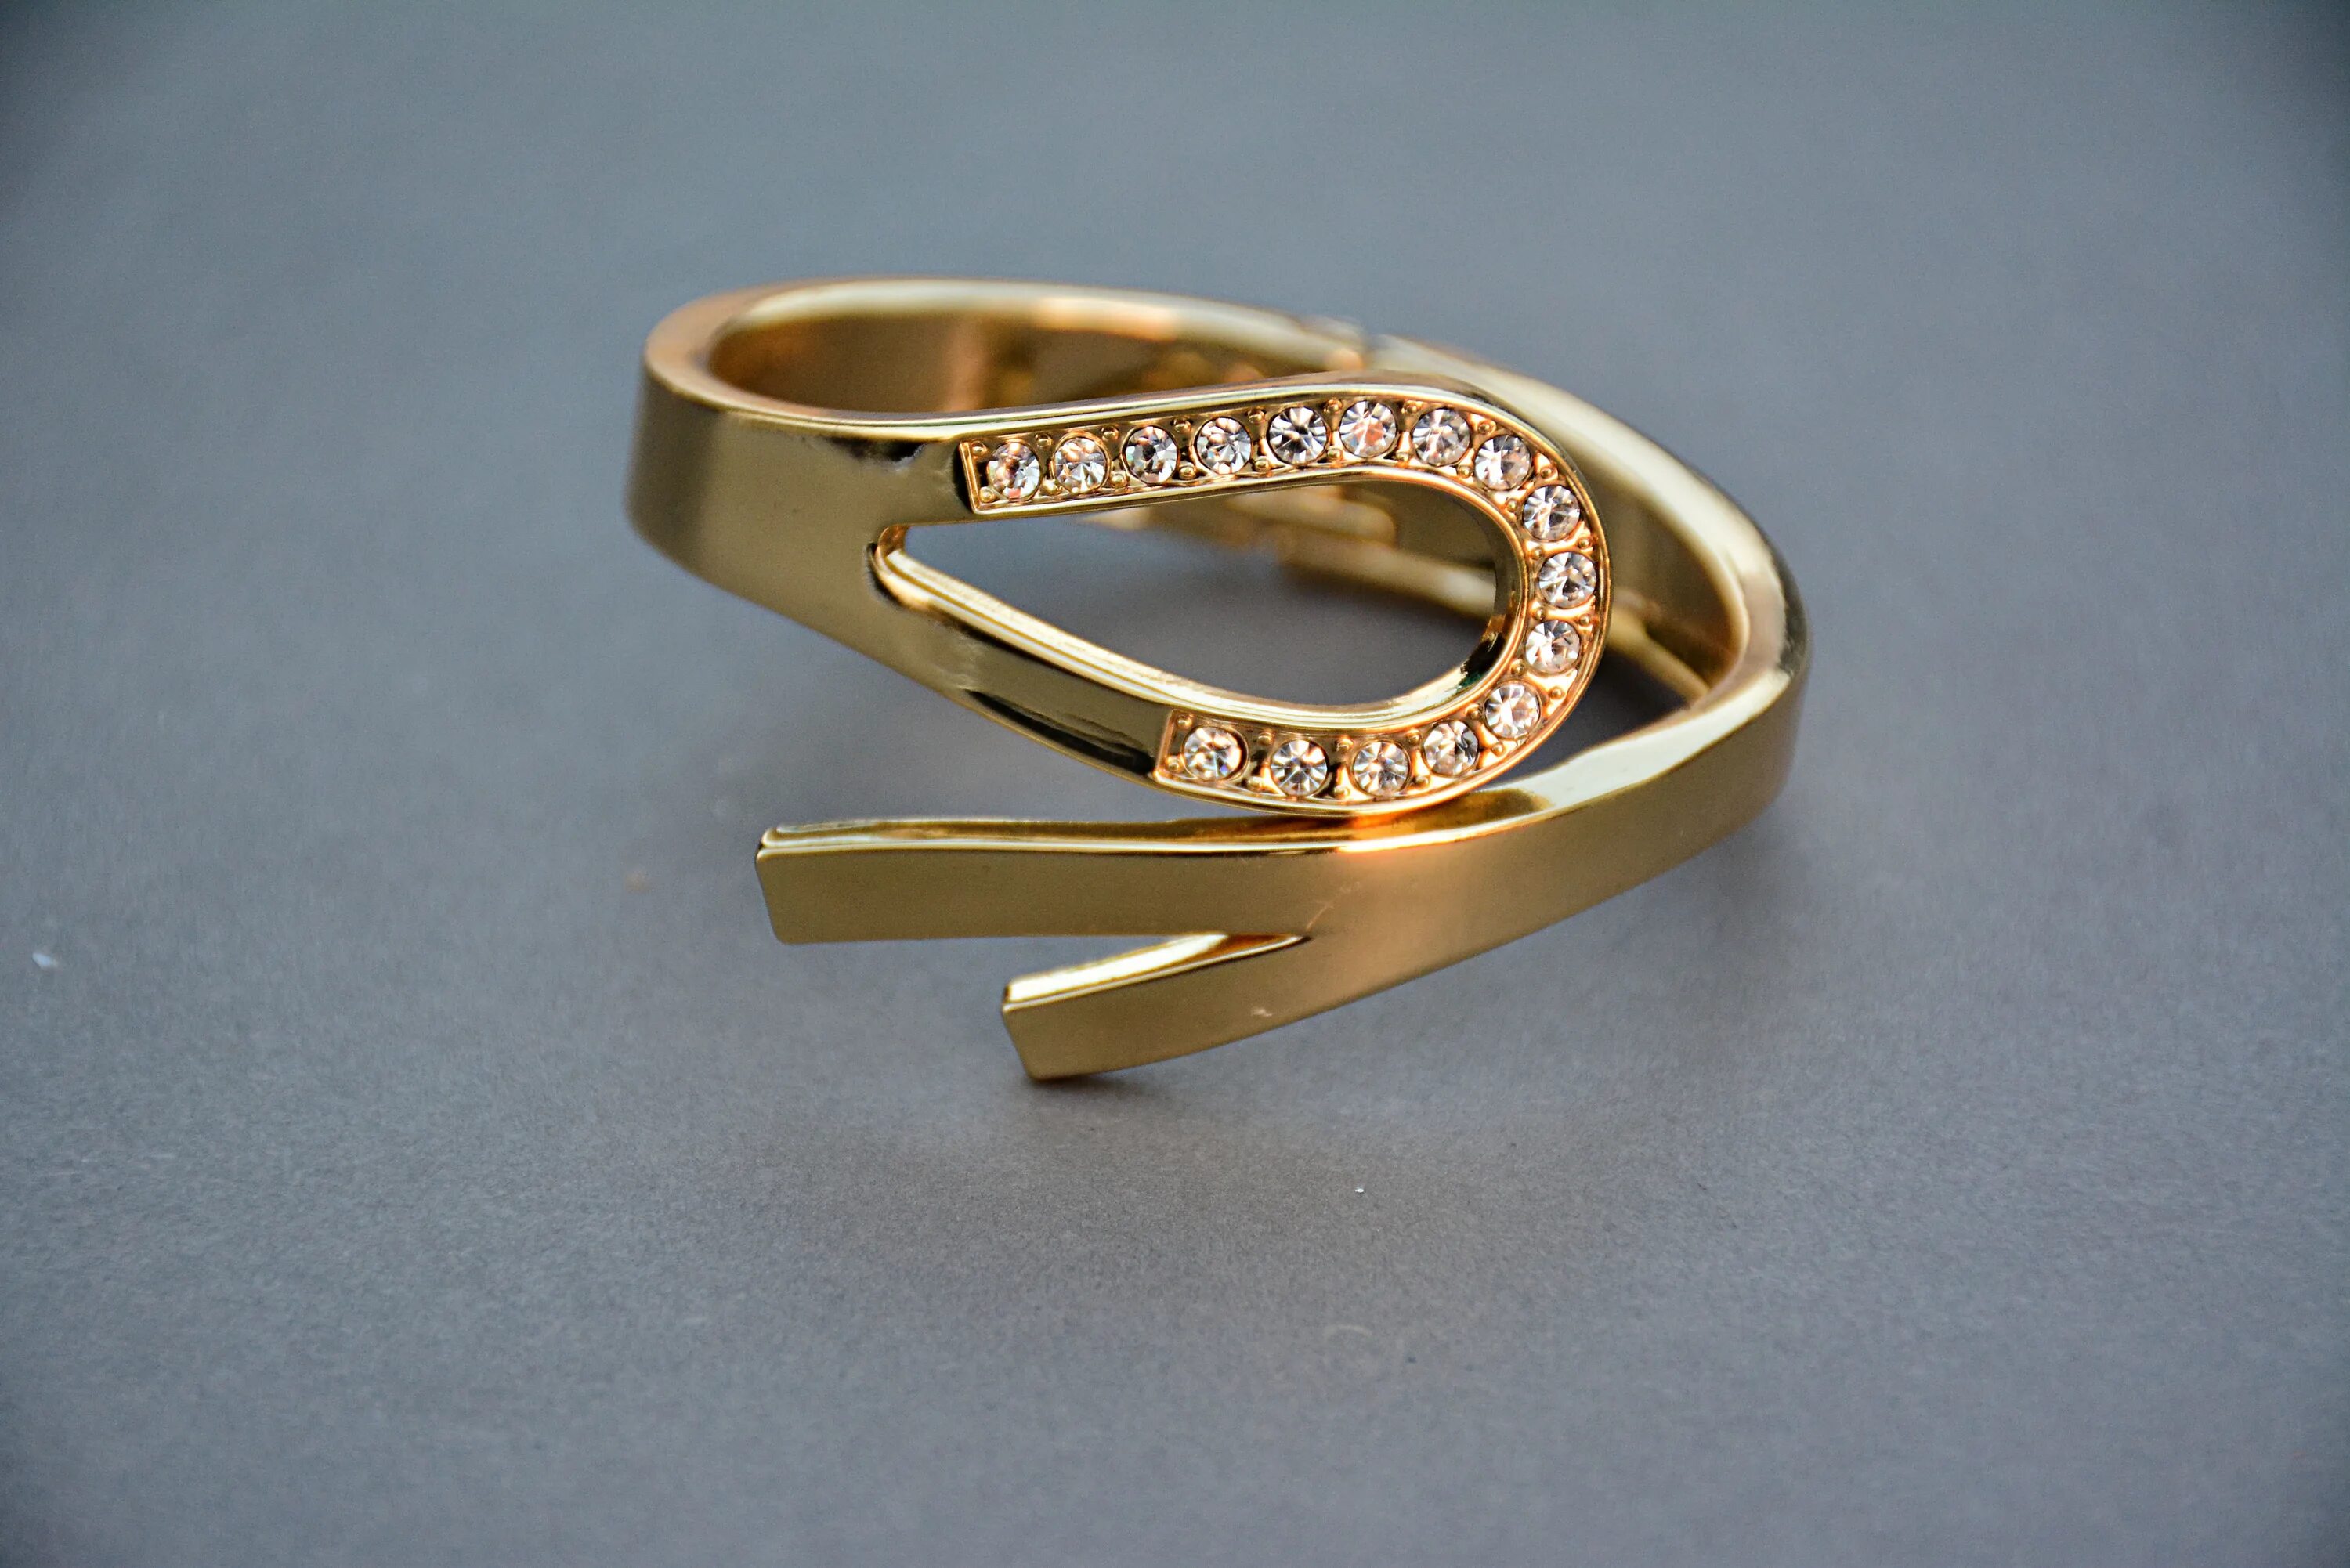 Gold кольца. Золотое кольцо. Кольцо (украшение). Обручальное кольцо женское золото. Оригинальные золотые кольца женские.